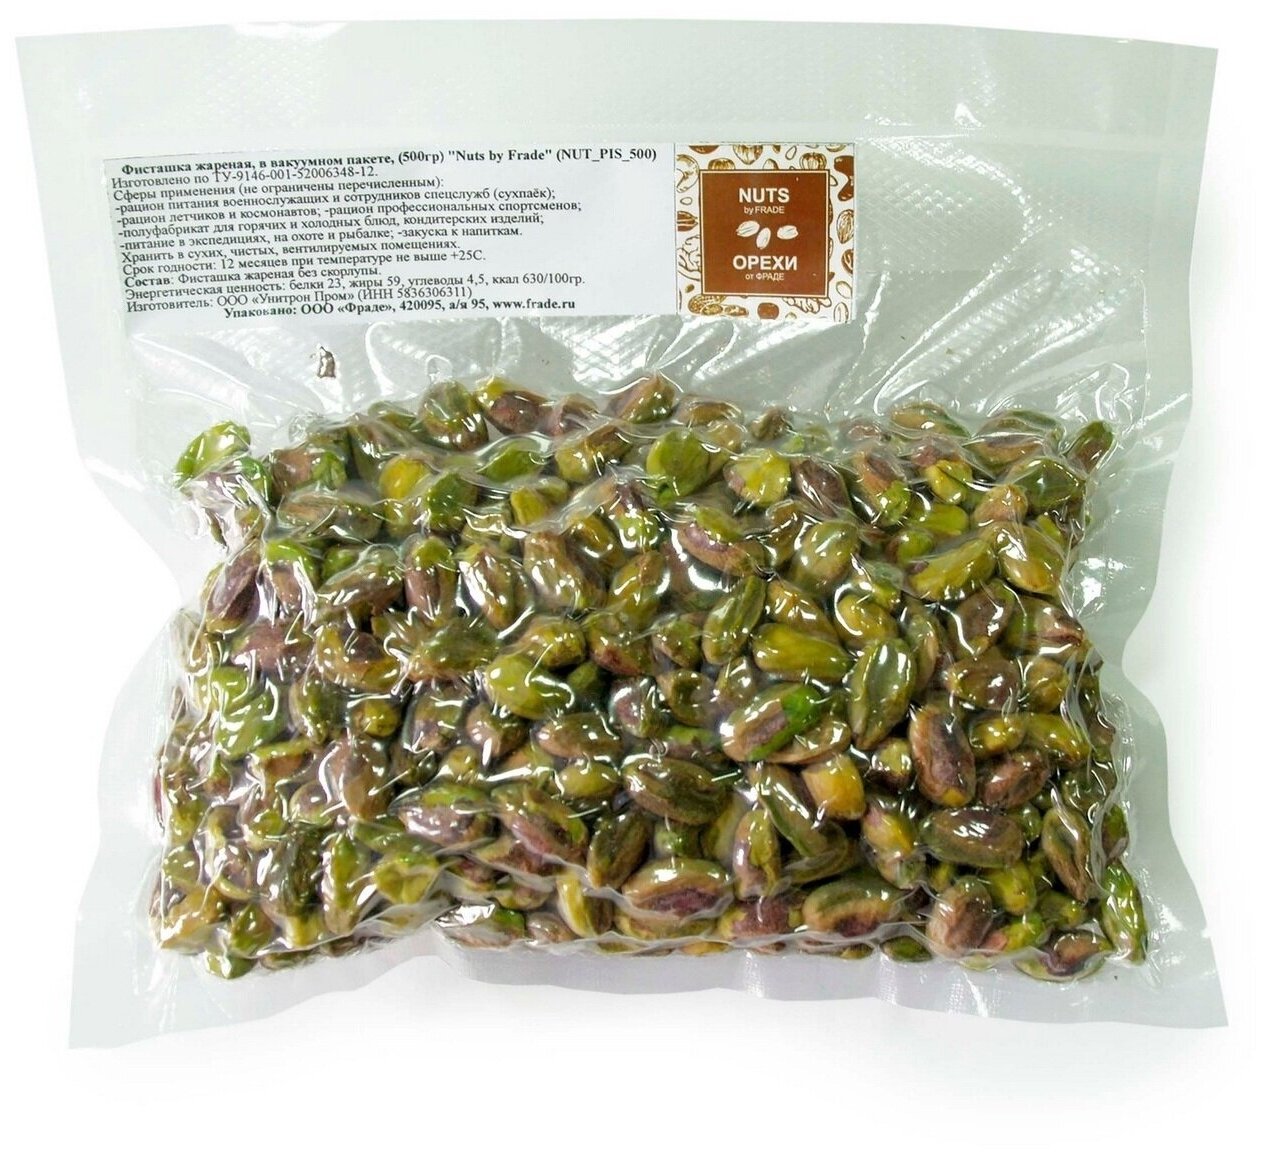 Фисташка чищеная жареная, в вакуумном пакете, (500гр) "Nuts by "Frade" - фотография № 1